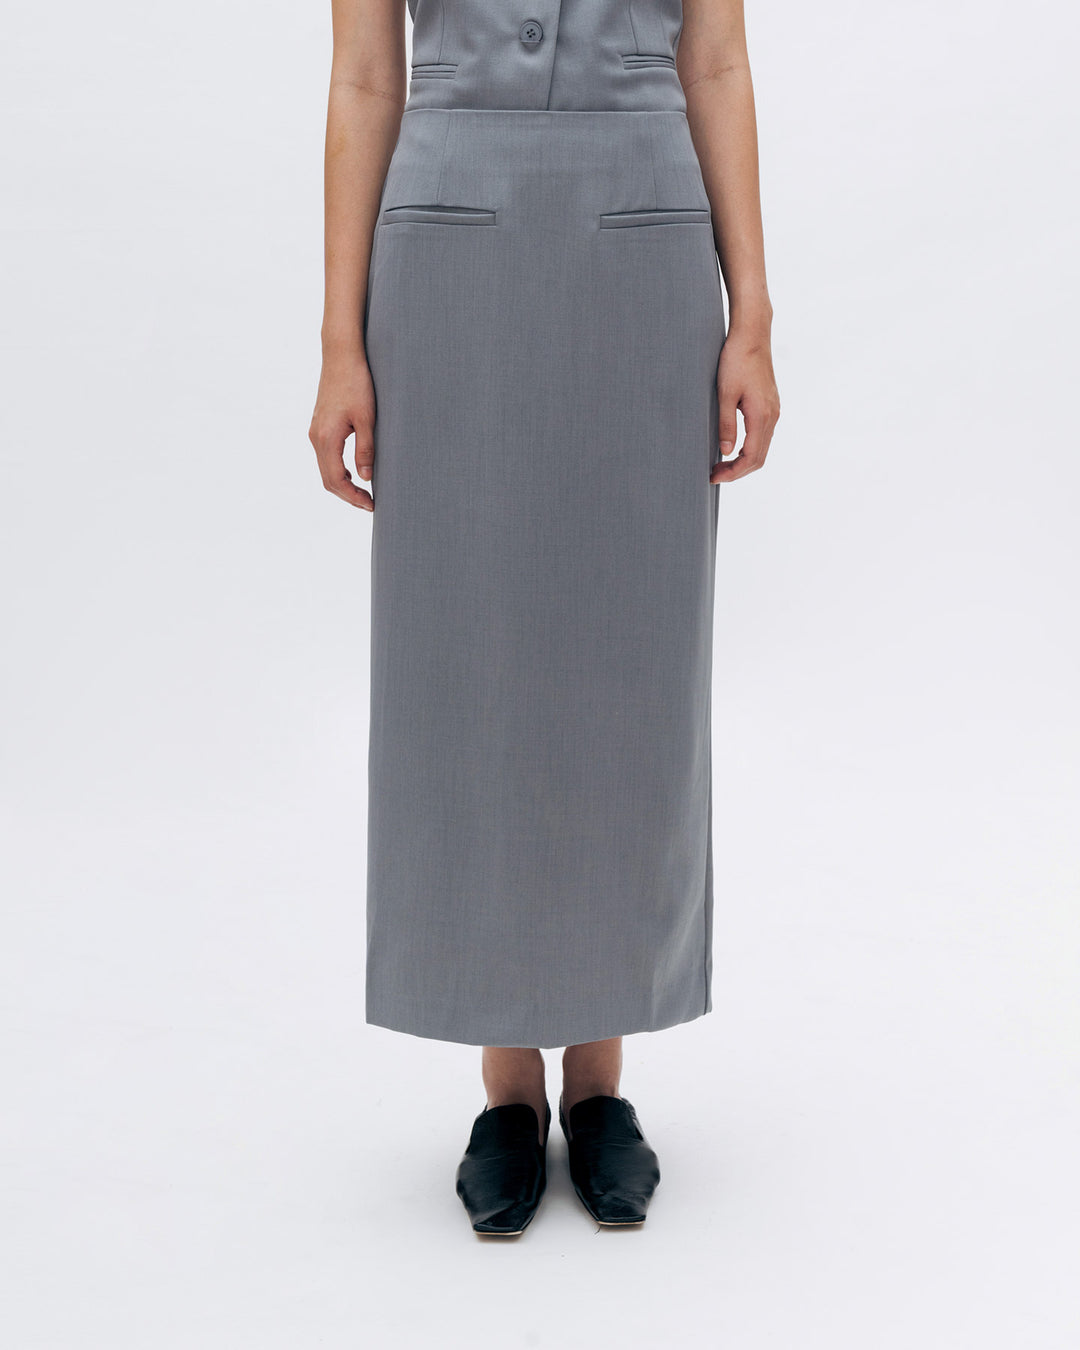 Anzani Skirt